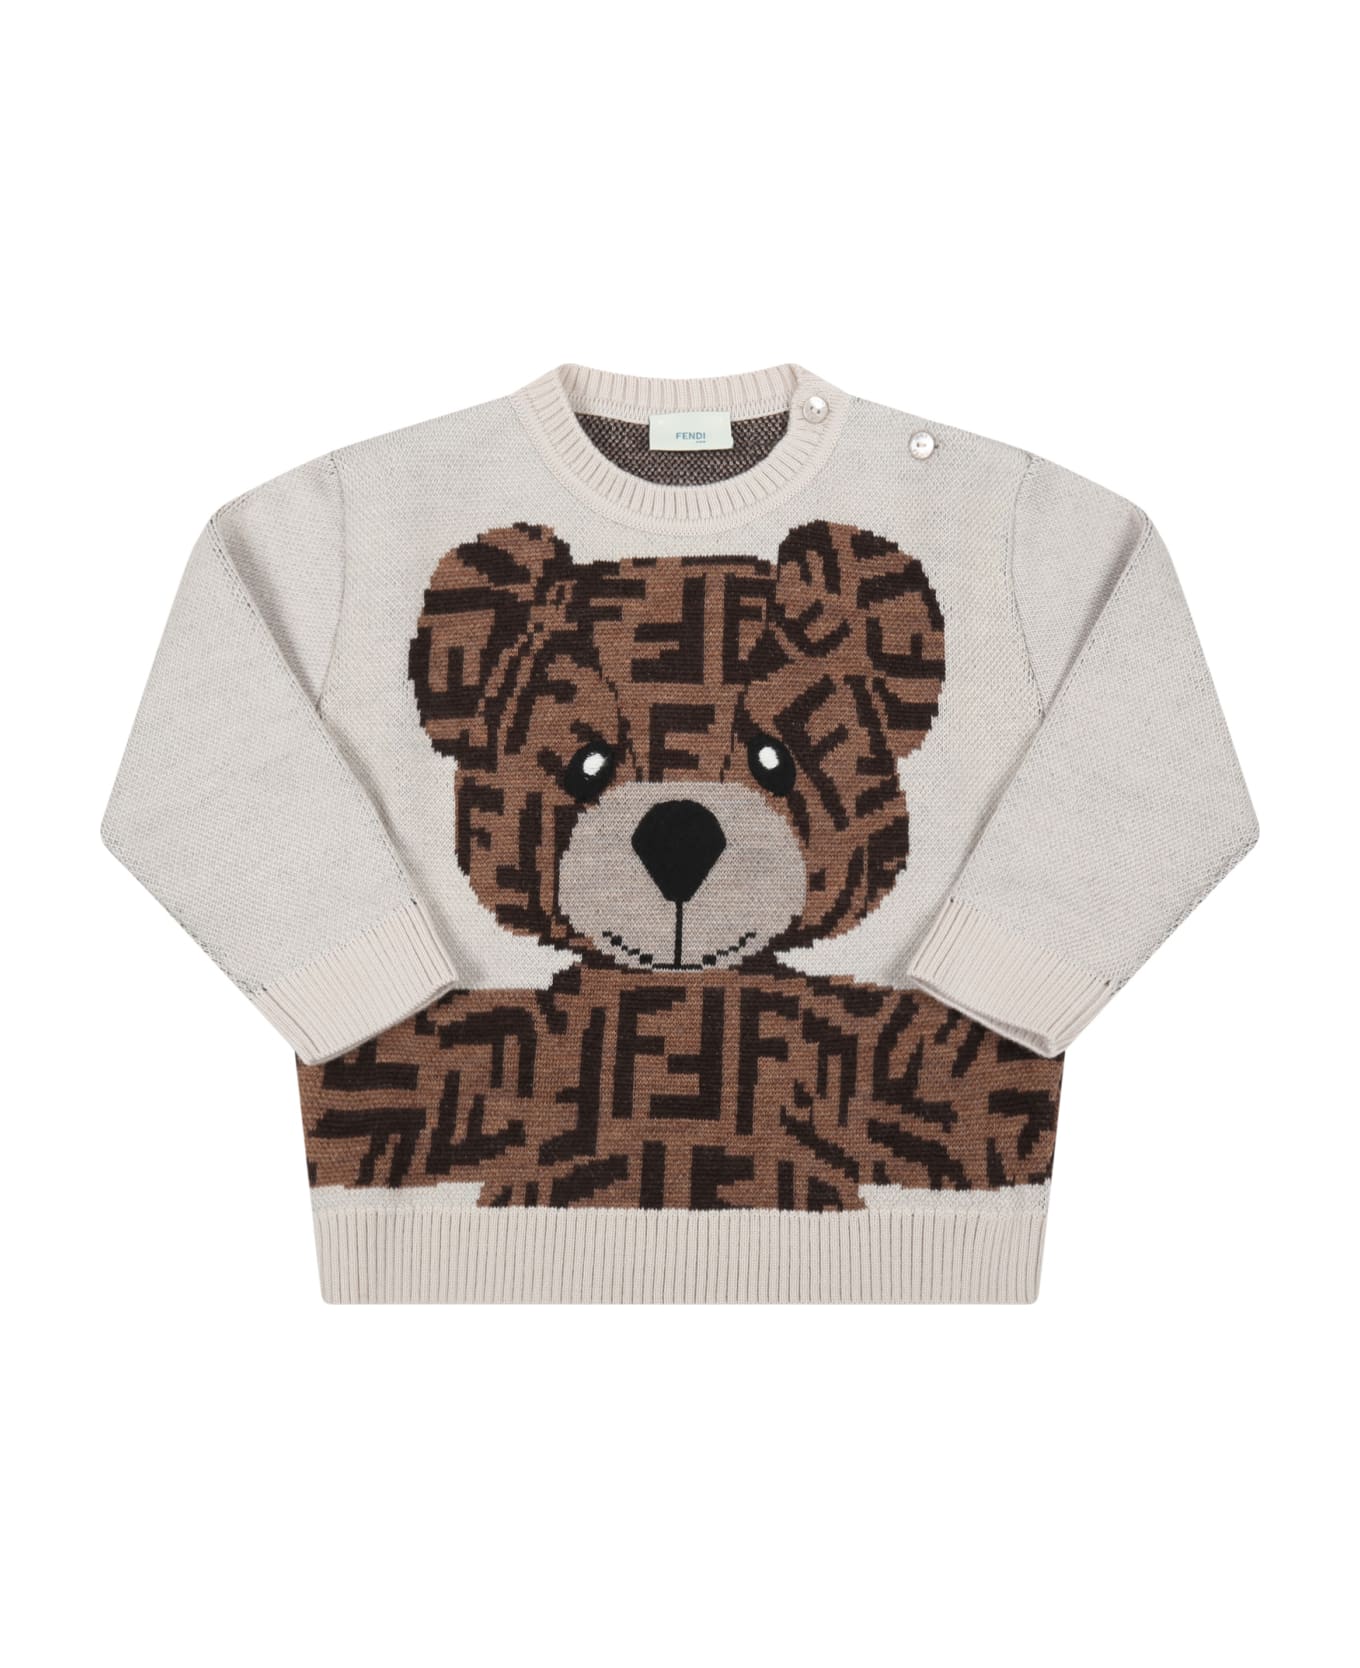 Fendi Body Beige Sweater For Baby Kids With Bear - Beige